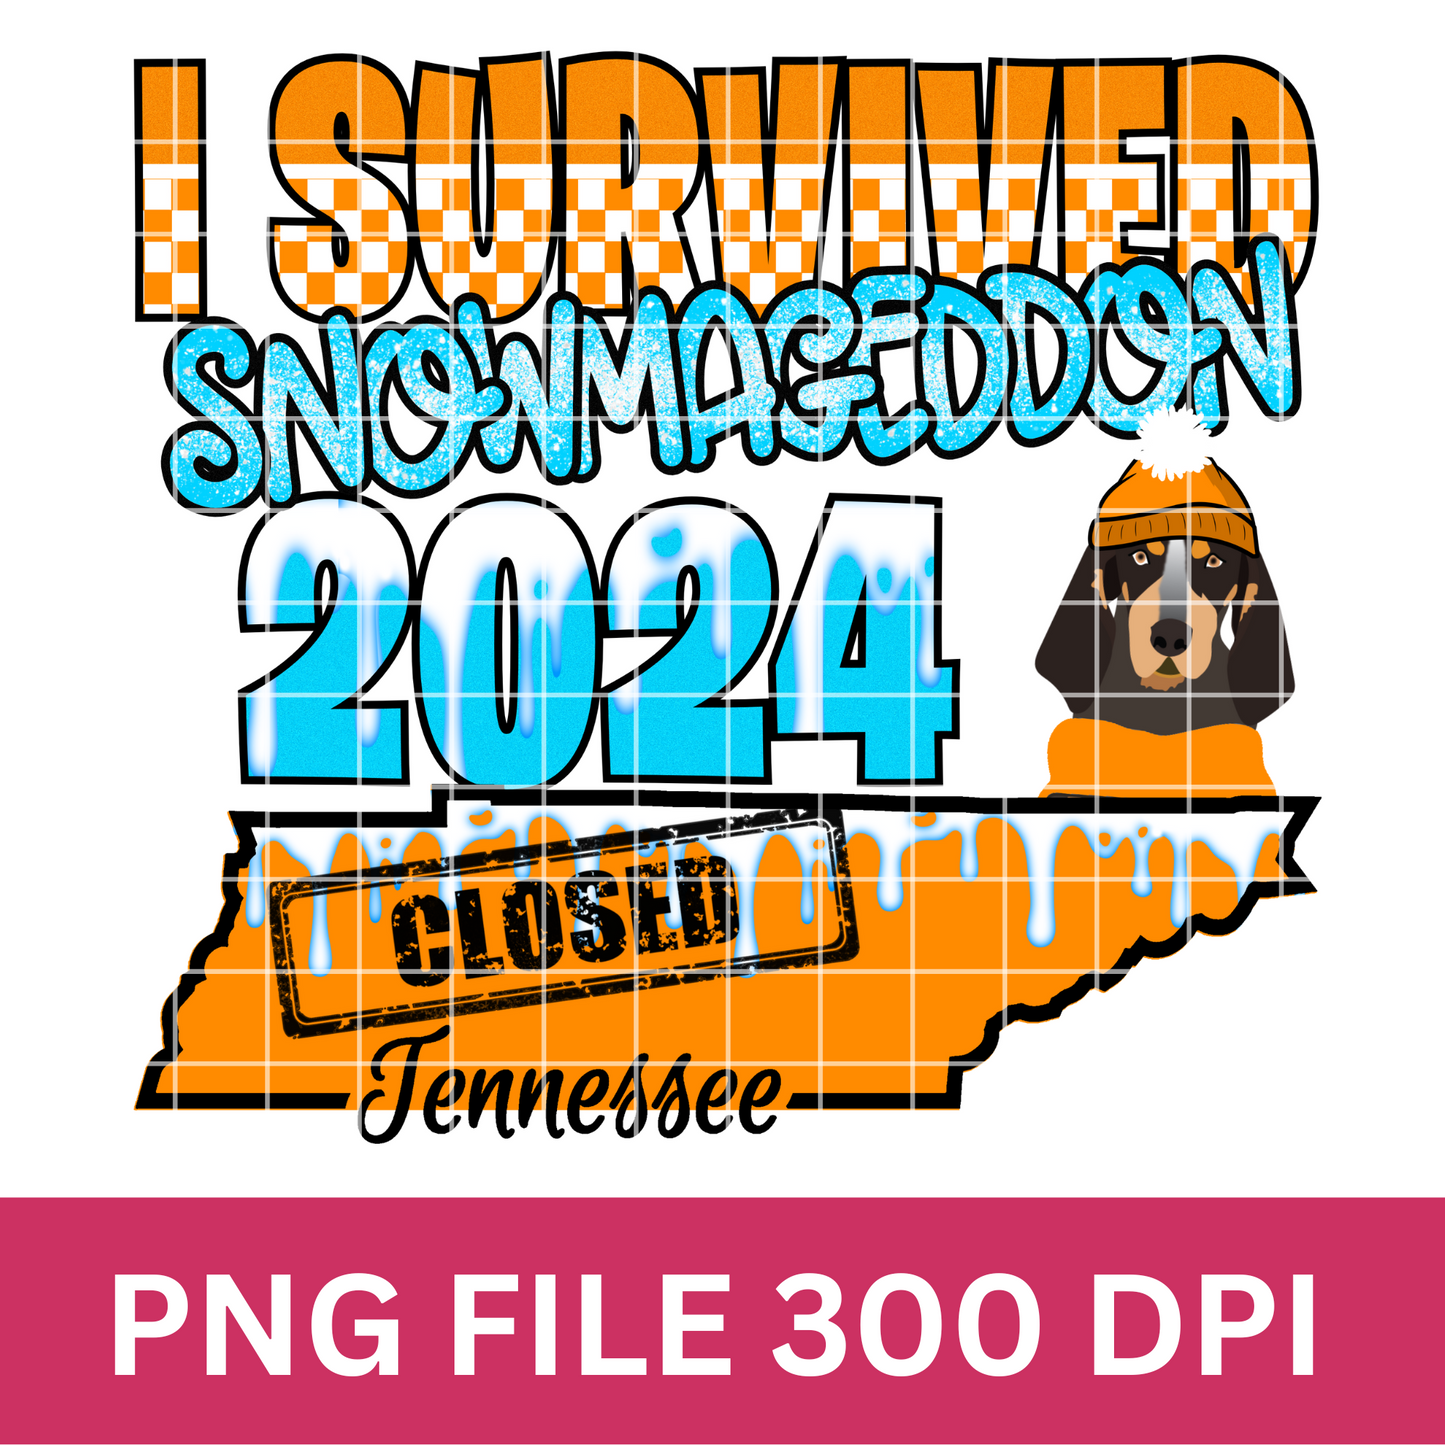 Tennessee I Survived Snowmageddon 2024 Sublimation Design PNG